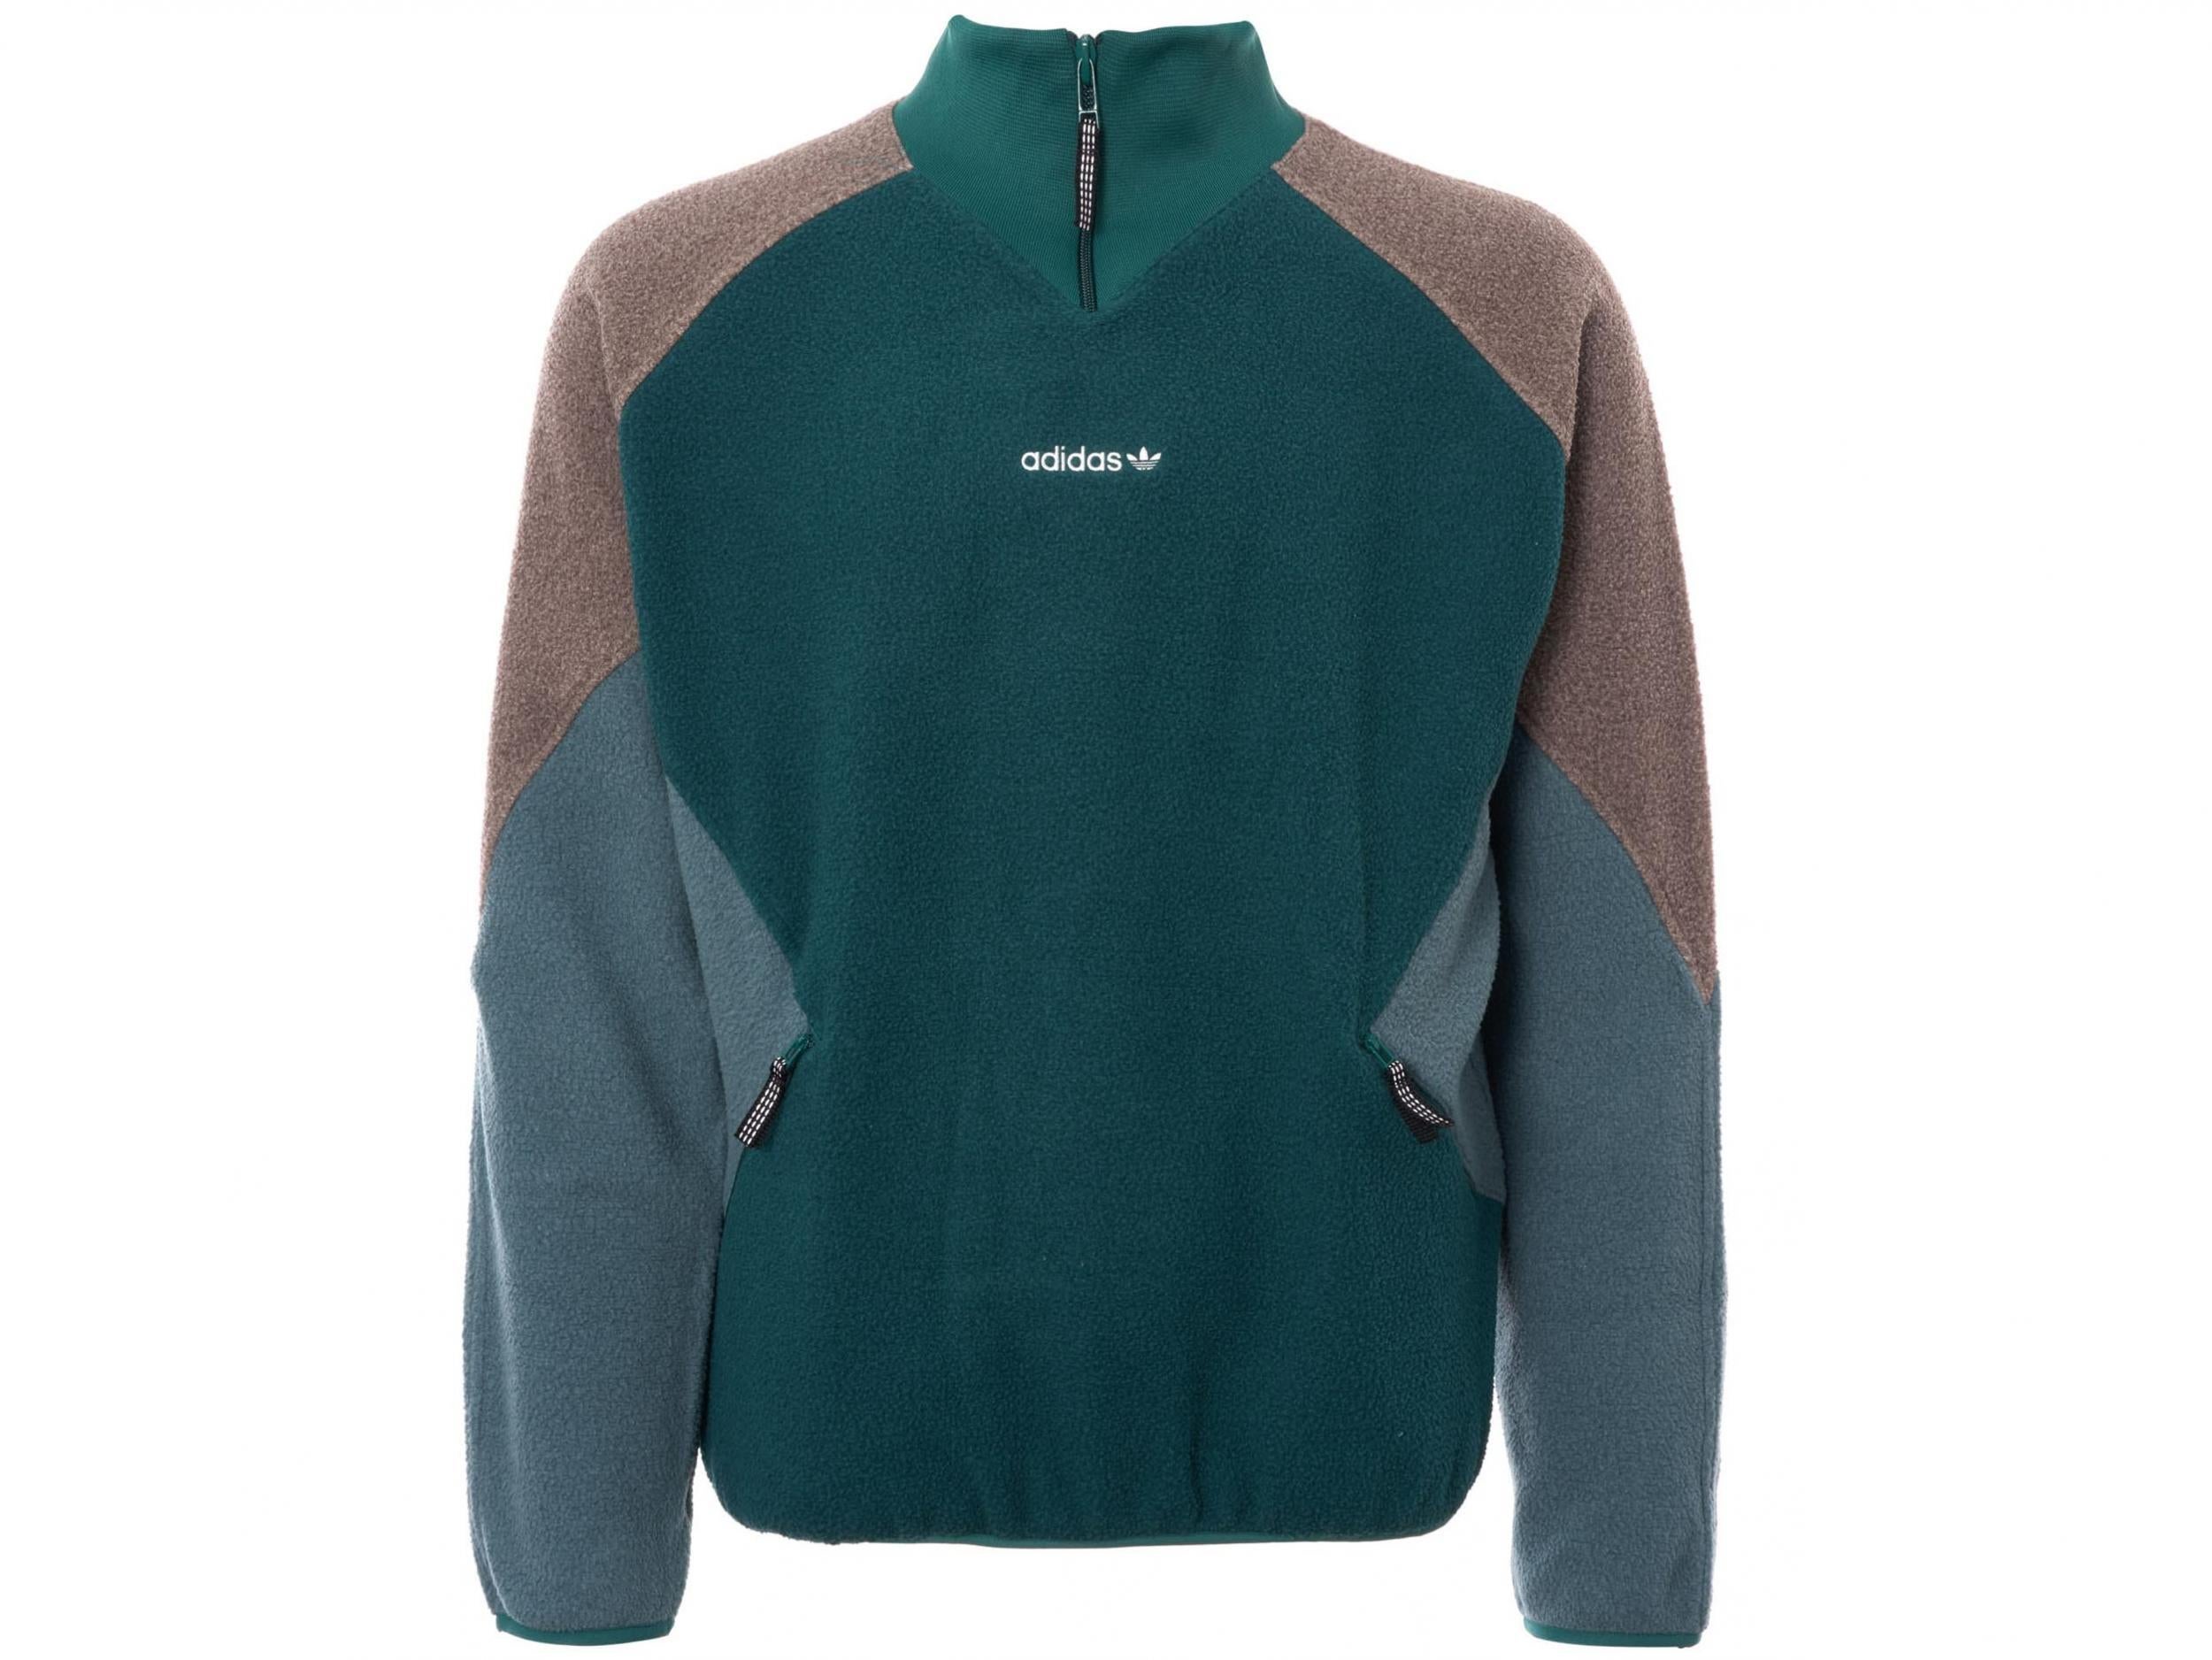 Adidas Originals, EQT Colour-Block Fleece Half-Zip Jacket, £100, Mr Porter